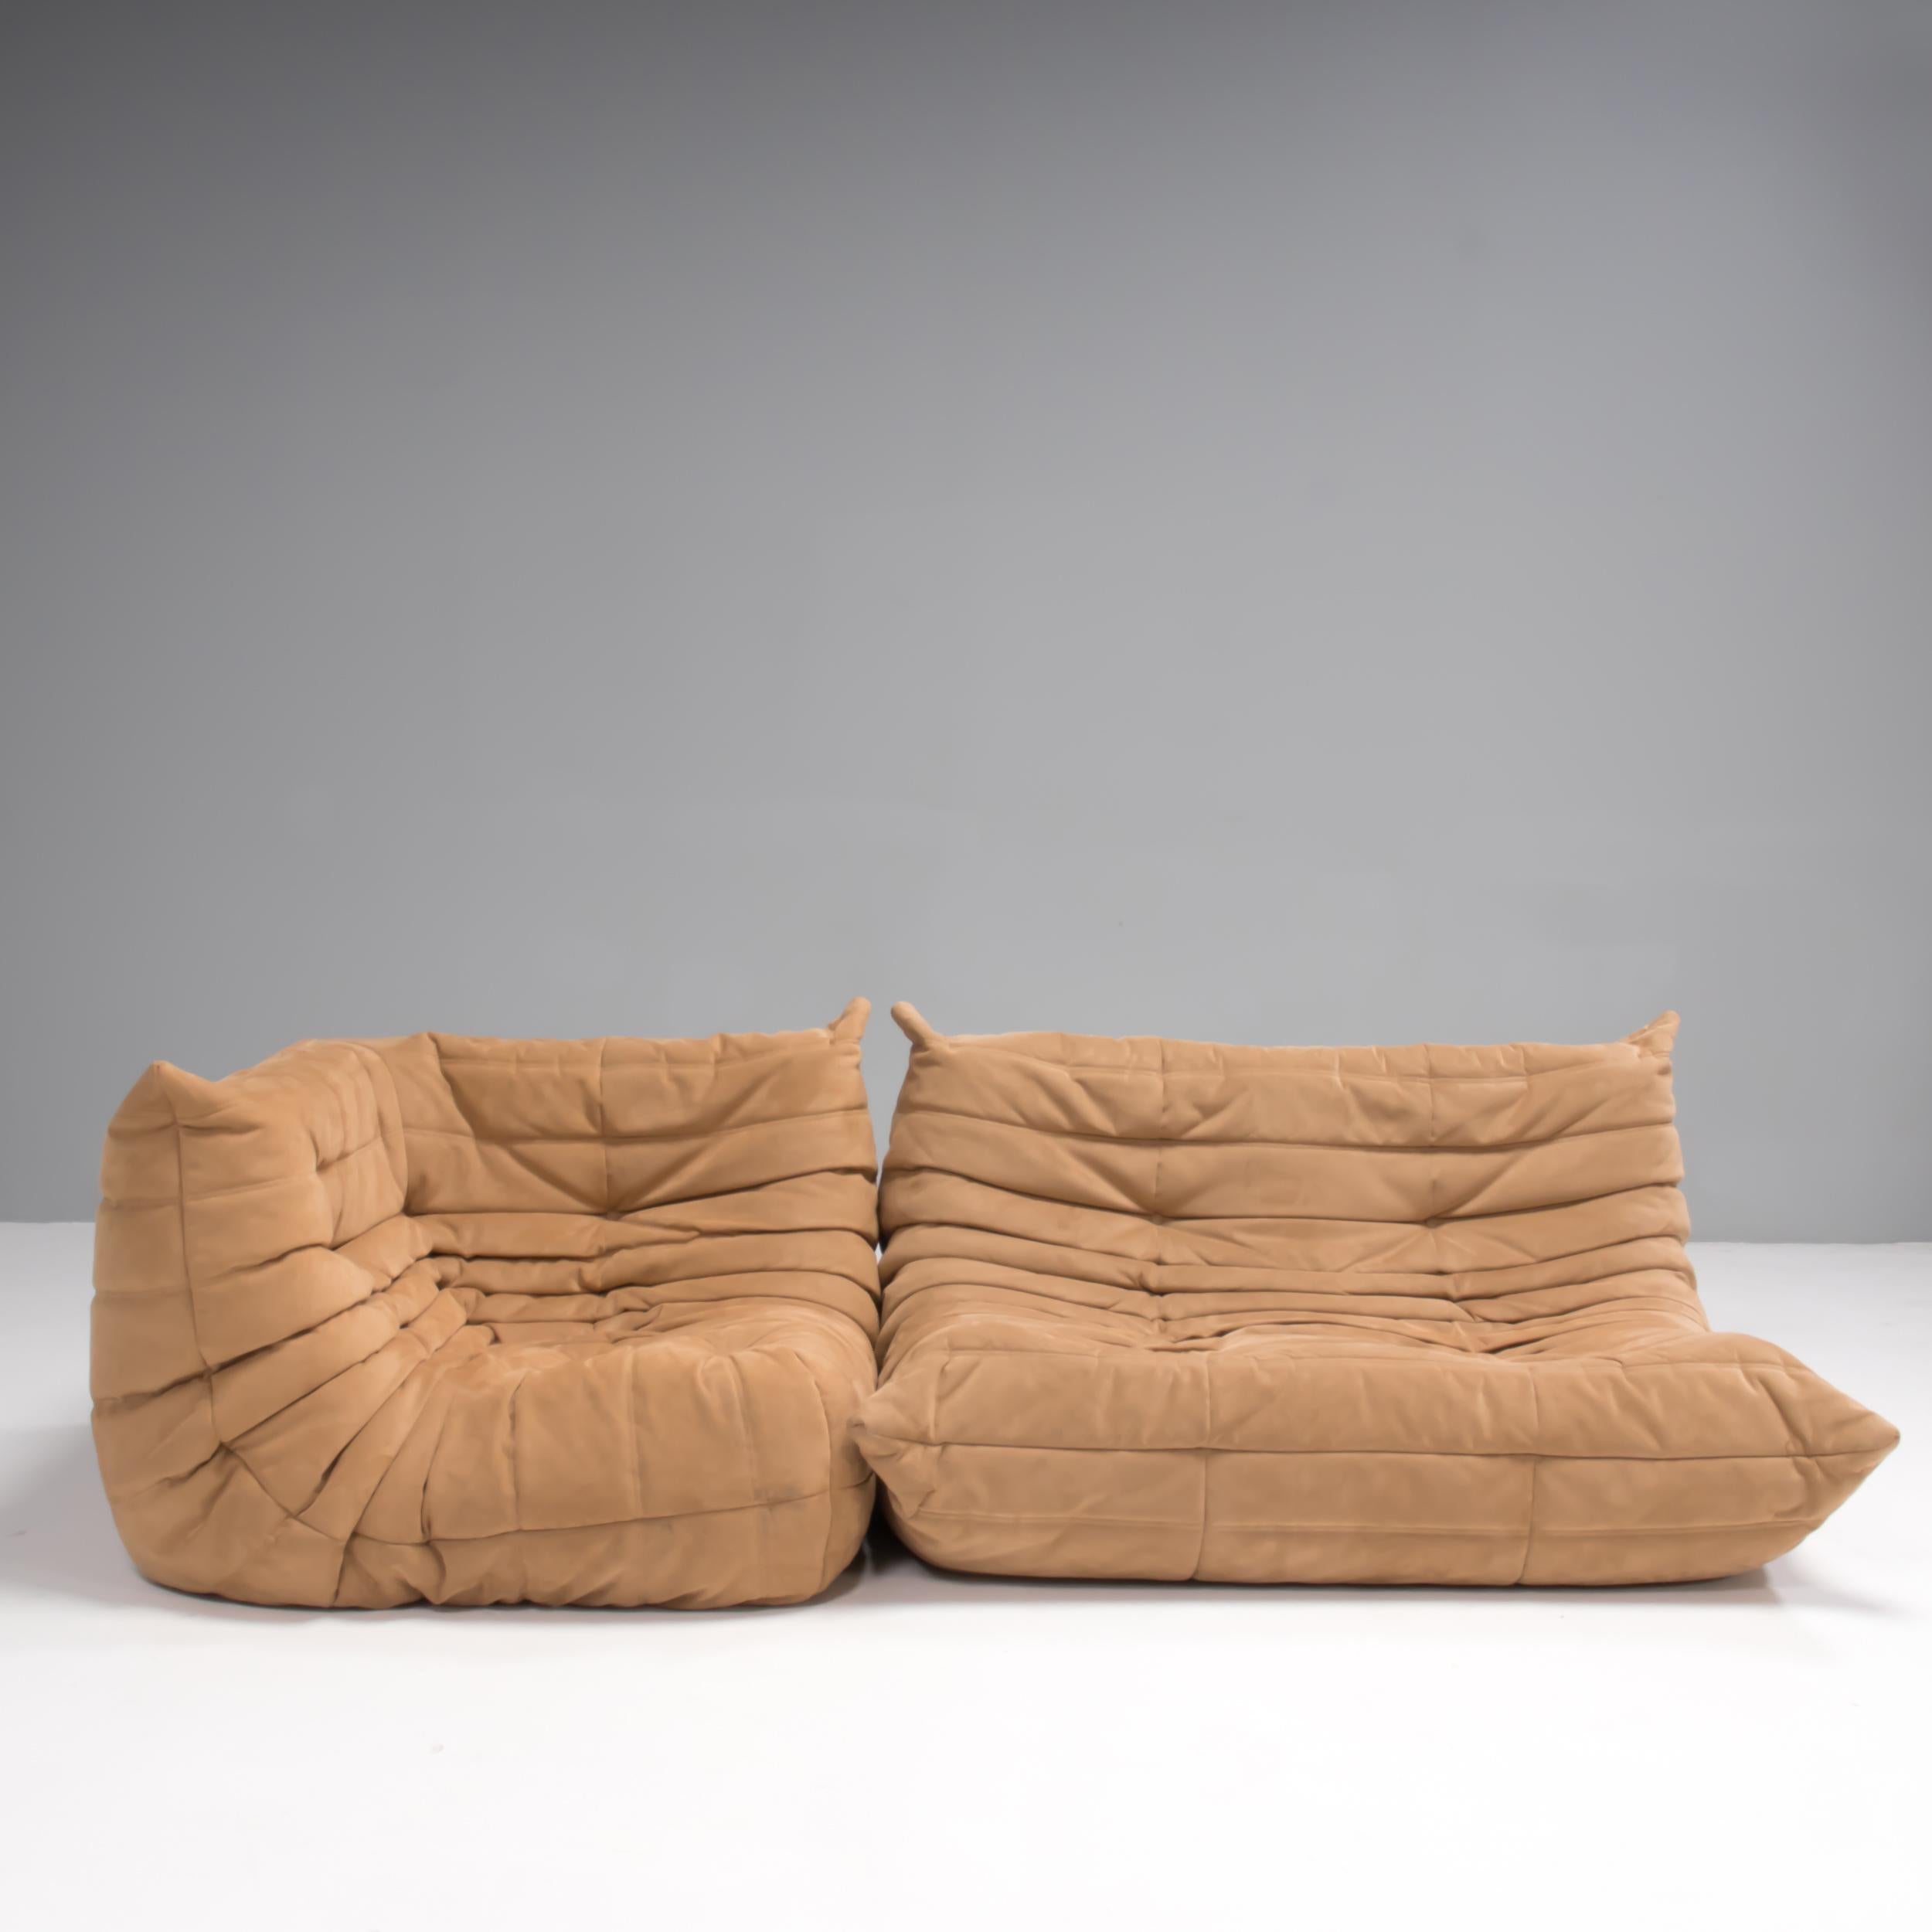 Das ikonische Sofa Togo, das Michel Ducaroy 1973 für Ligne Roset entworfen hat, ist zu einem Designklassiker geworden. 

Dieses 2-Sitzer- und Ecksofa ist mit extra weichem, hellbraunem Veloursleder gepolstert und verfügt über das sofort erkennbare